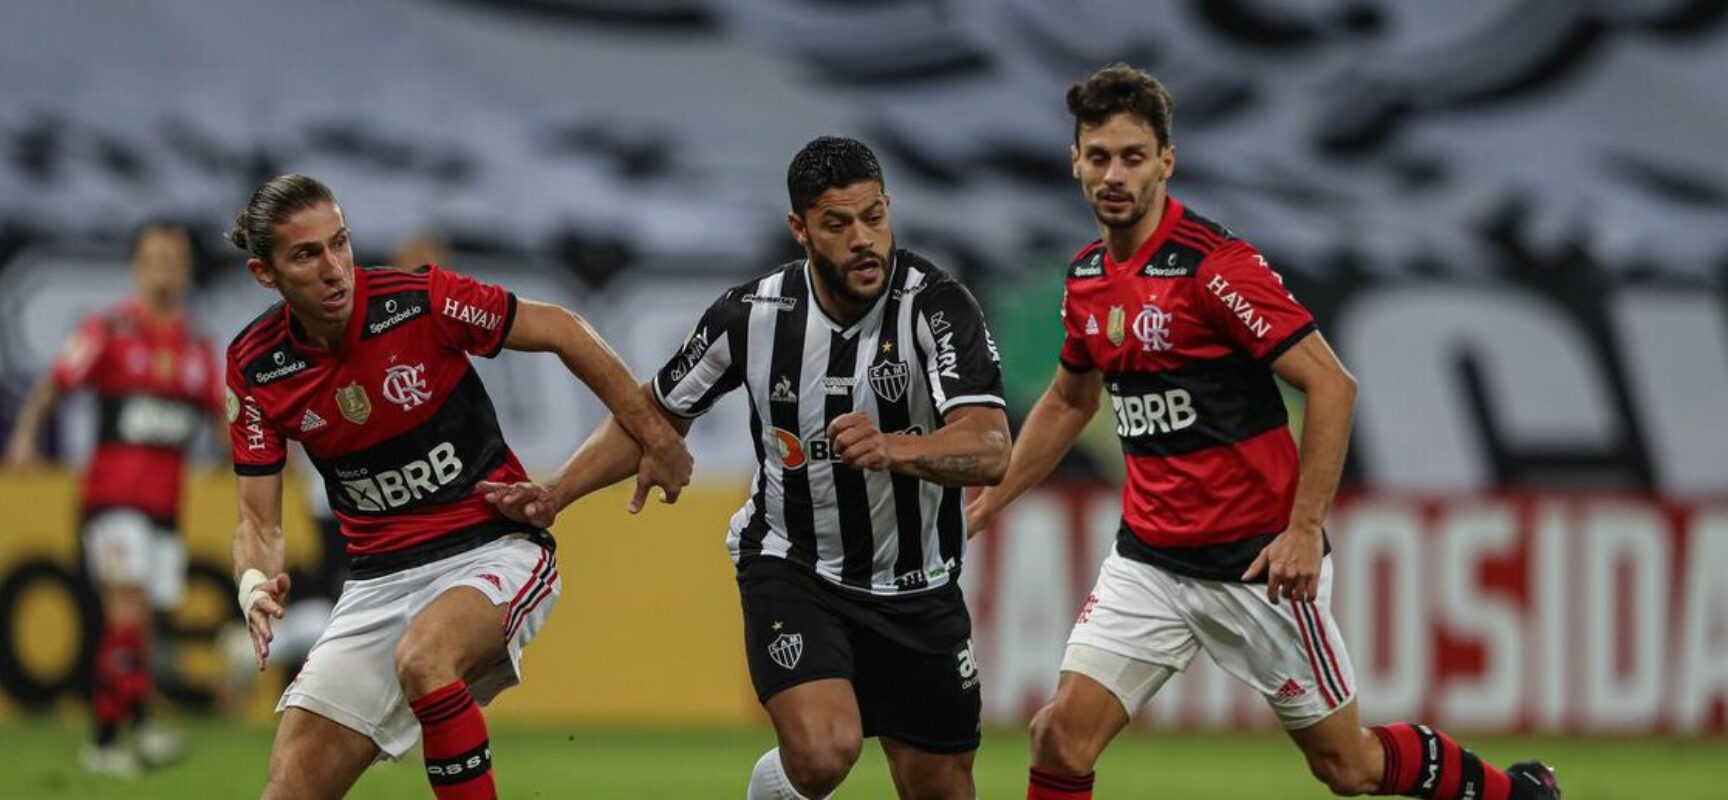 Flamengo recebe Atlético-MG tentando diminuir distância para liderança